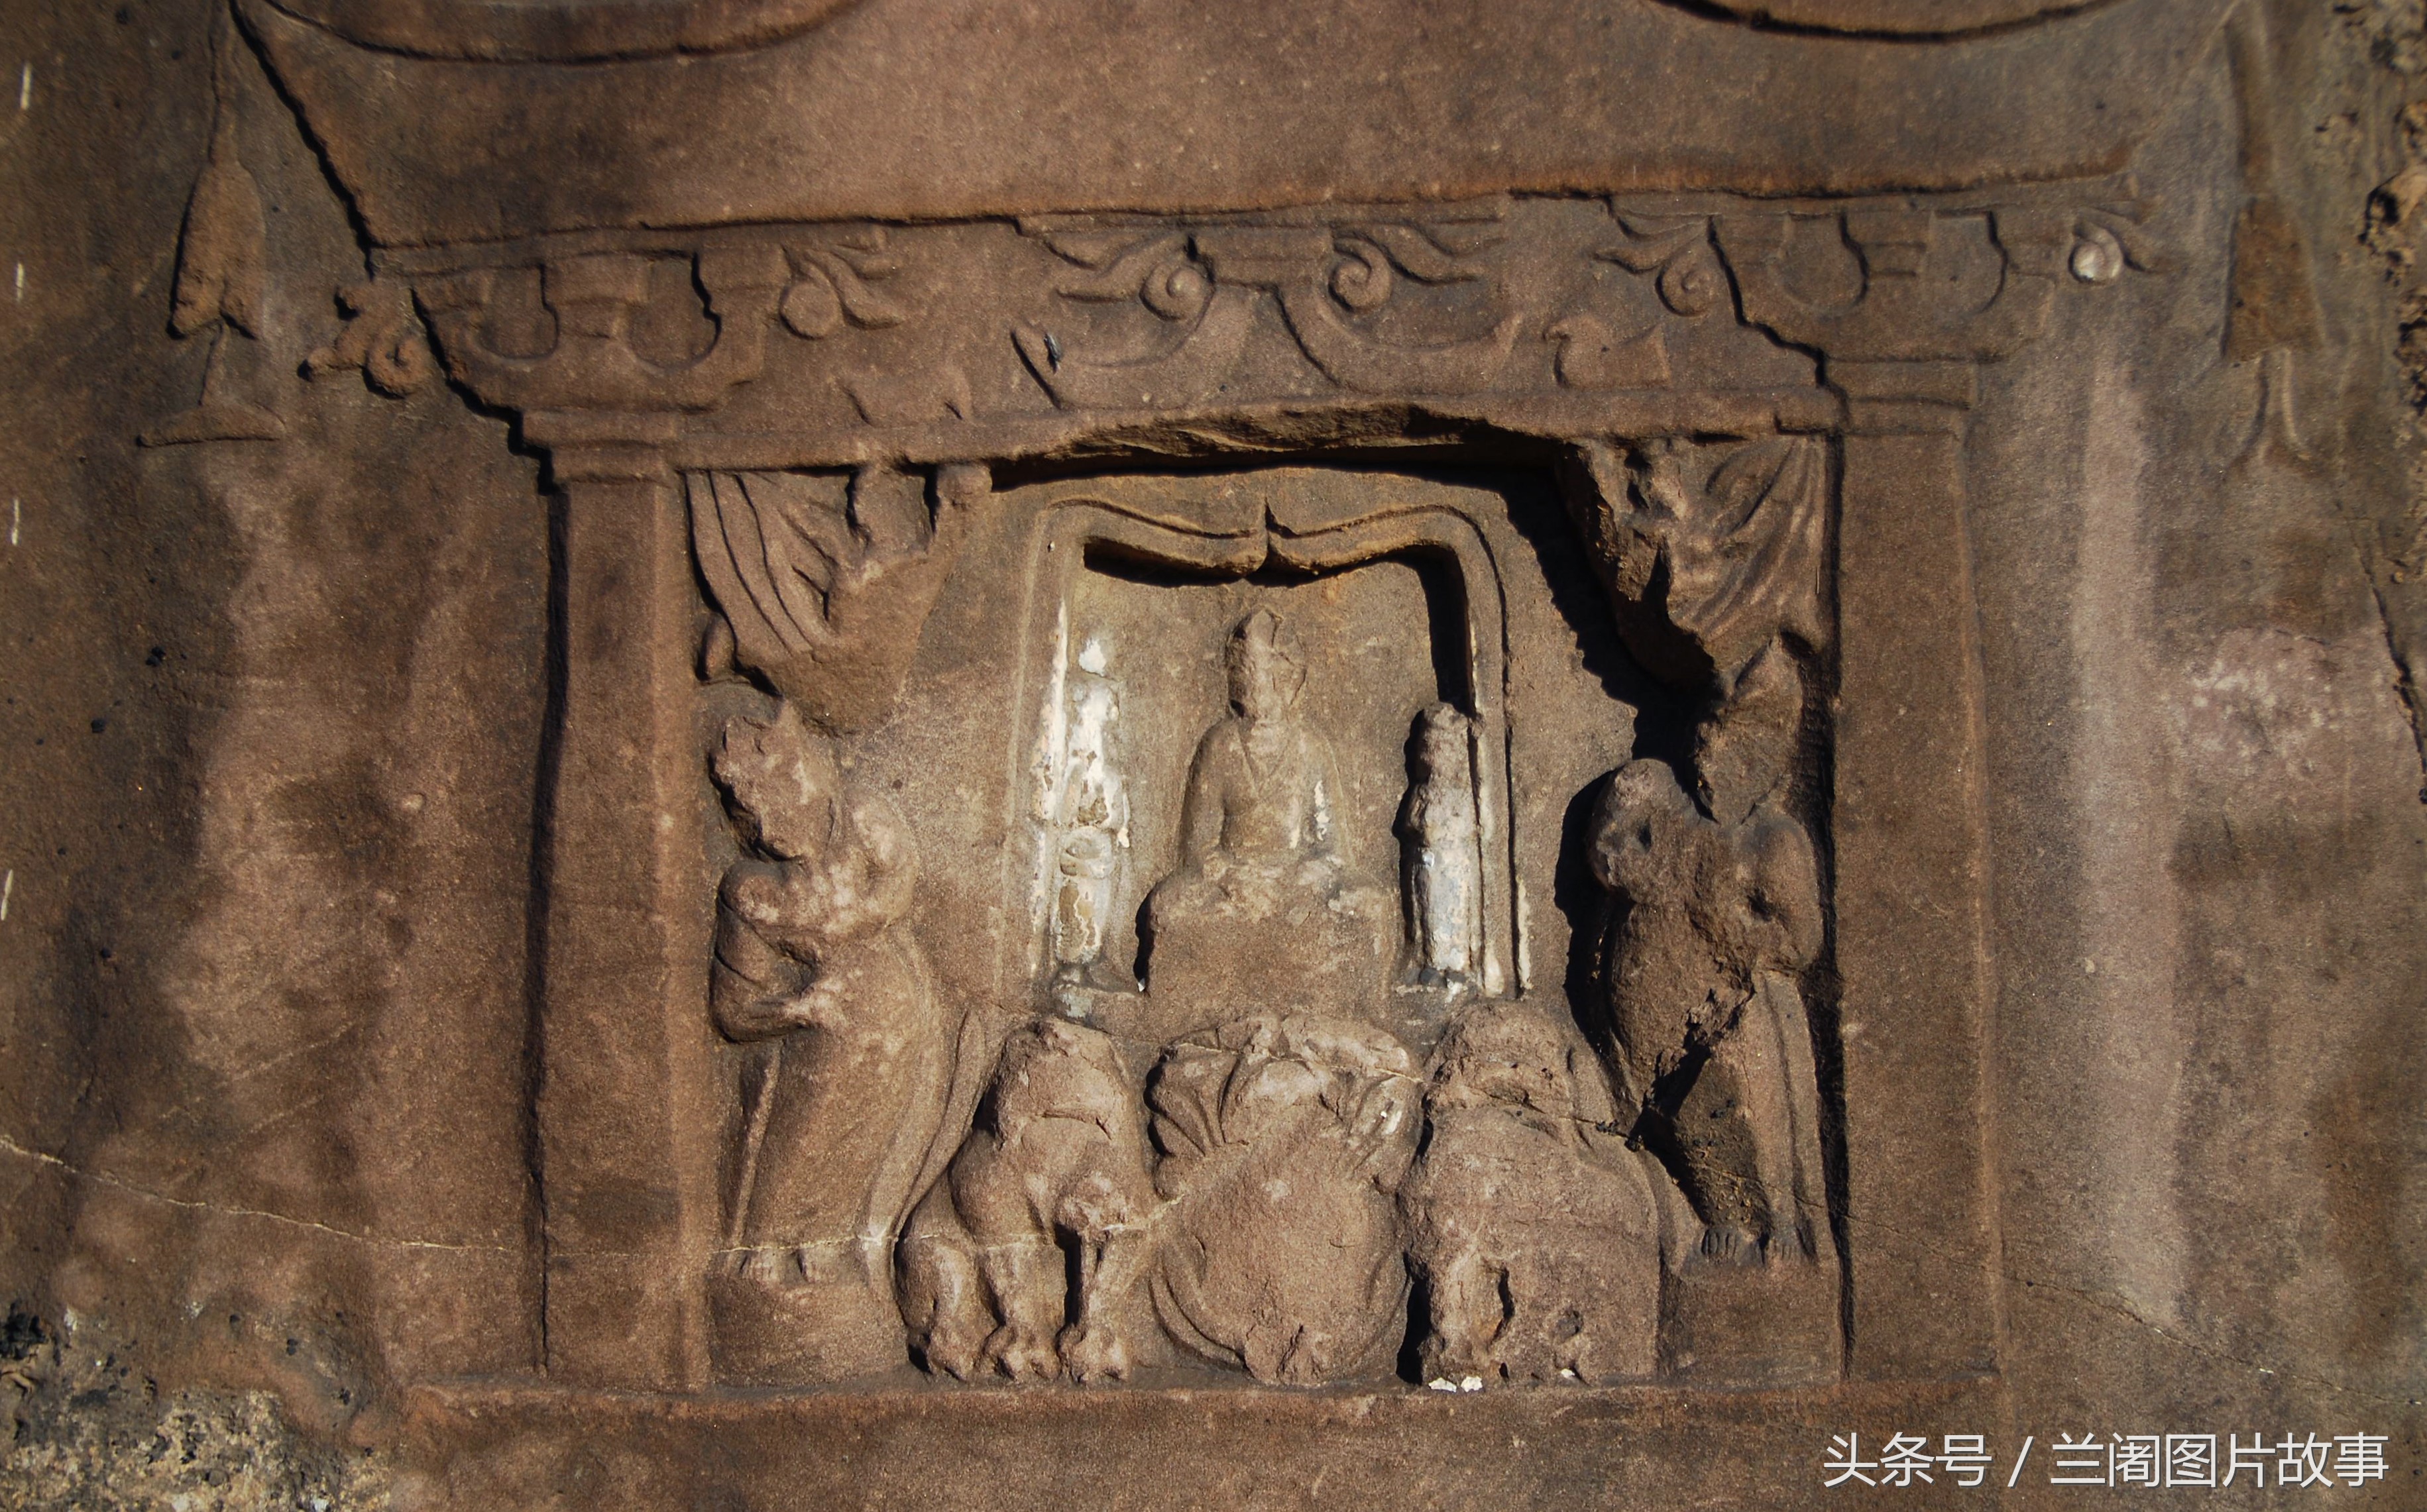 中国早期的佛教刻经之一，刻有《观世音菩萨普门品》的摩崖造像